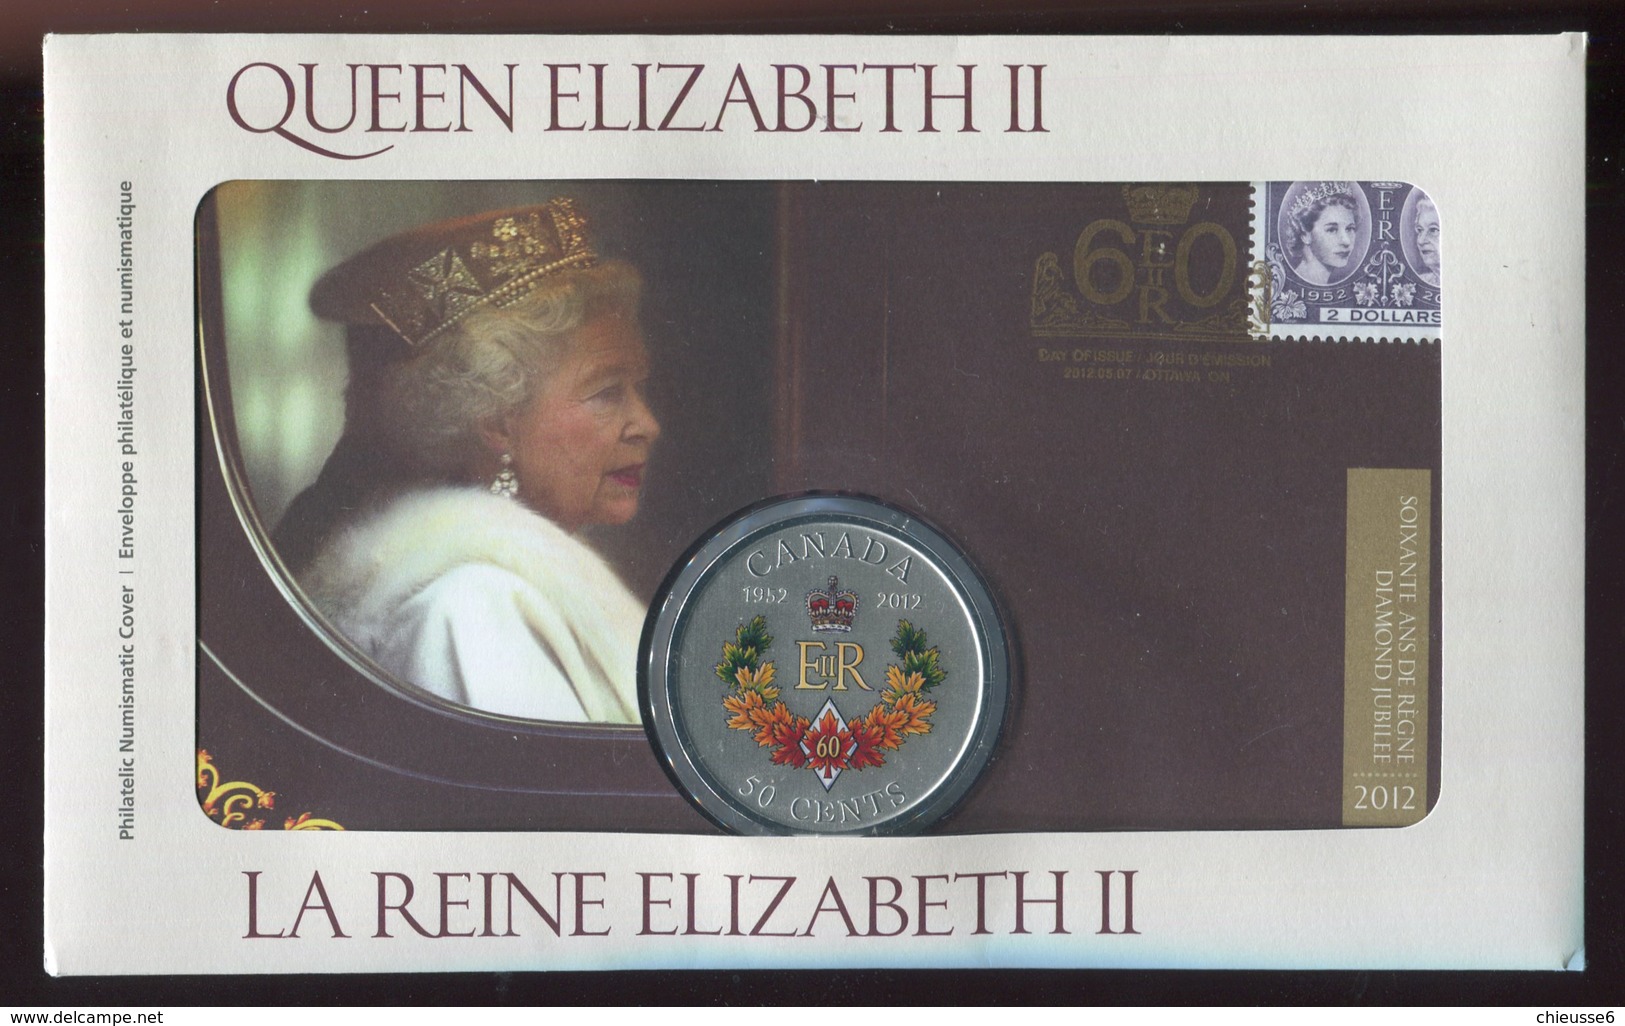 Canada - Enveloppe Philatélique - Queen Elizabeth II   Avec Médaille - Canada Post Year Sets/merchandise